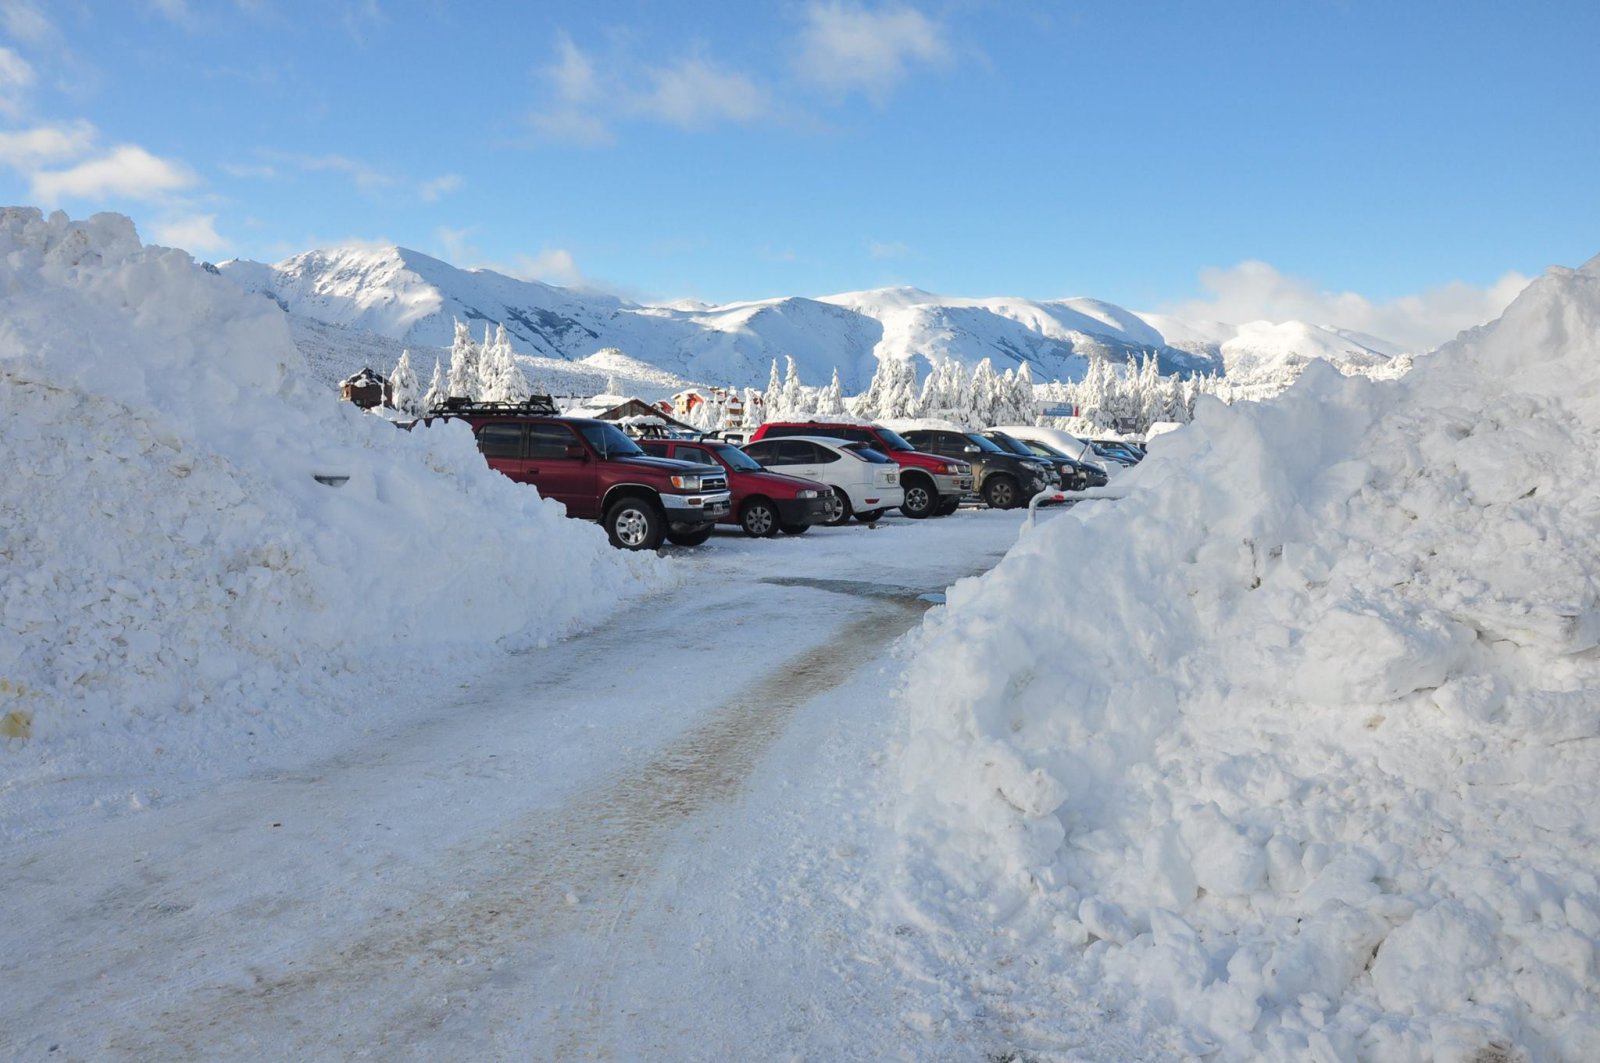 Parkoló autók és hófalak | Fotó: Cerro Catedral